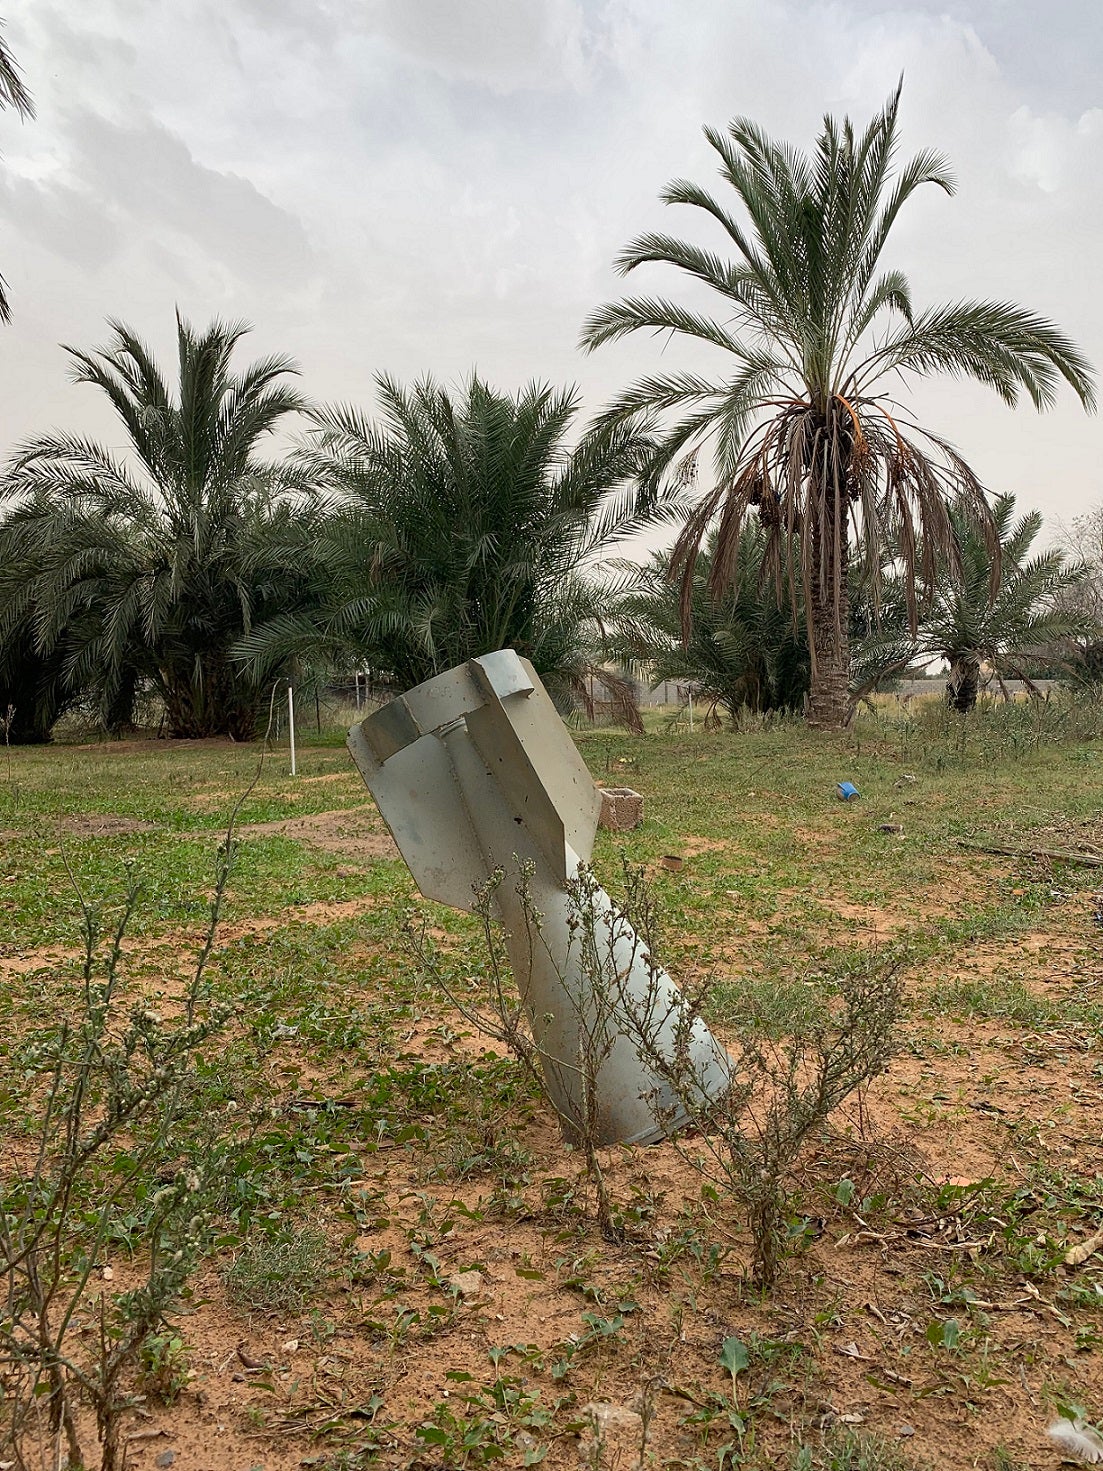 وحدة الذيل من قنبلة عنقودية من طراز "آر بي كي- 250 بي تي إيه بي-2.5 إم"، عُثر عليها في منطقة سكنية قرب طريق الأصفاح، ضواحي طرابلس، ليبيا، 18 ديسمبر/كانون الأول 2019. 